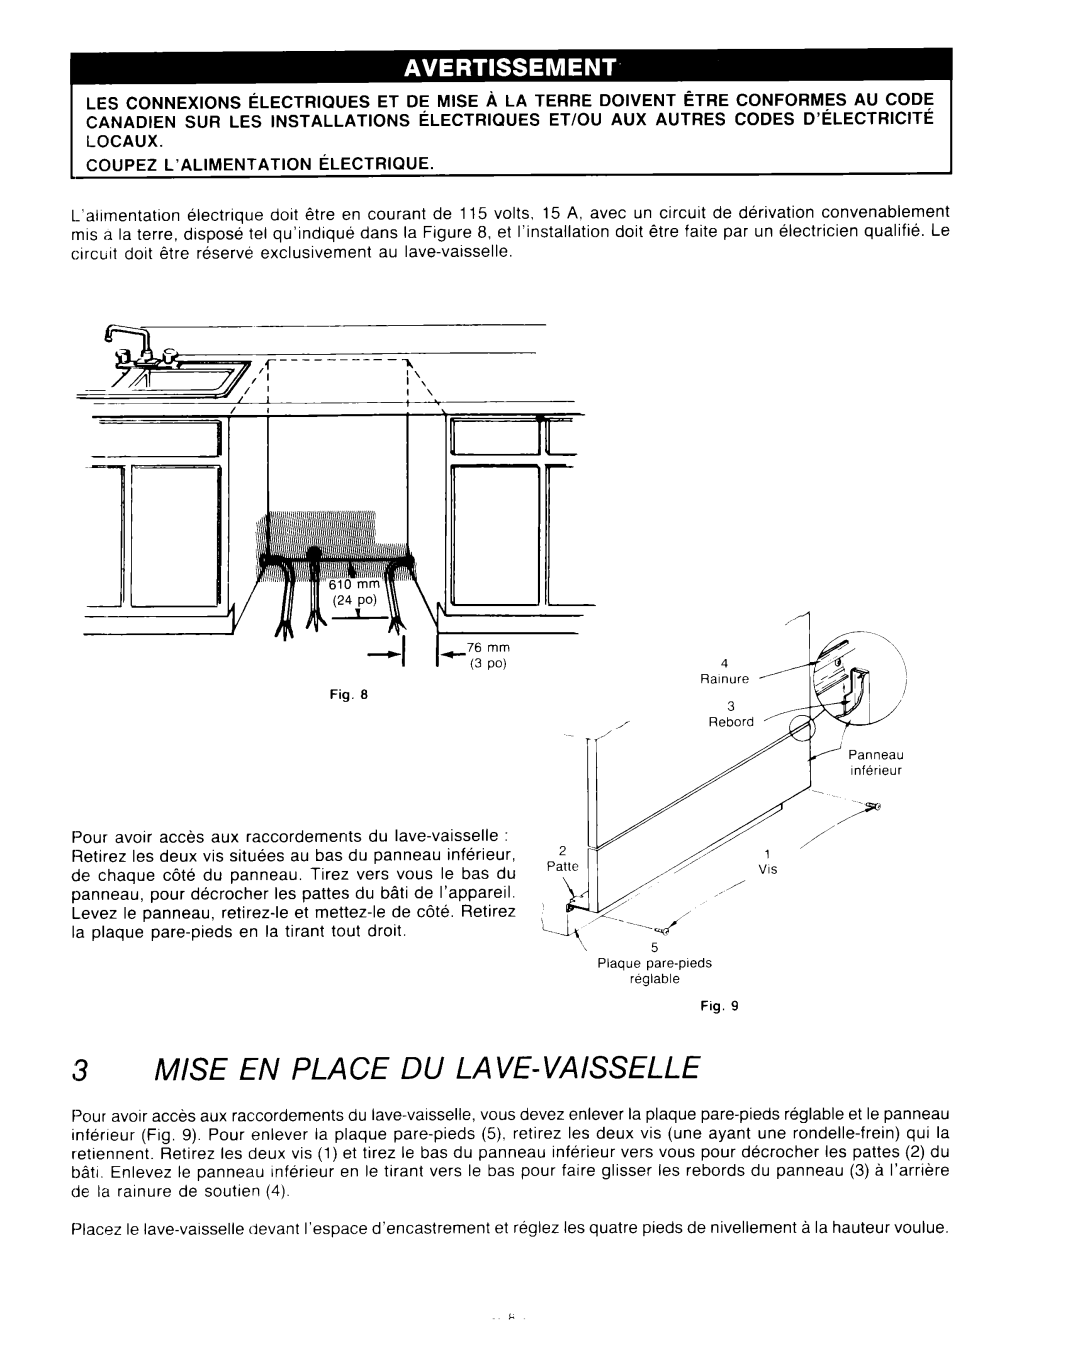 KitchenAid KUD-22 manual Mise En Place Du Lave-Vaisselle, Plaque pare-pleds reglable 